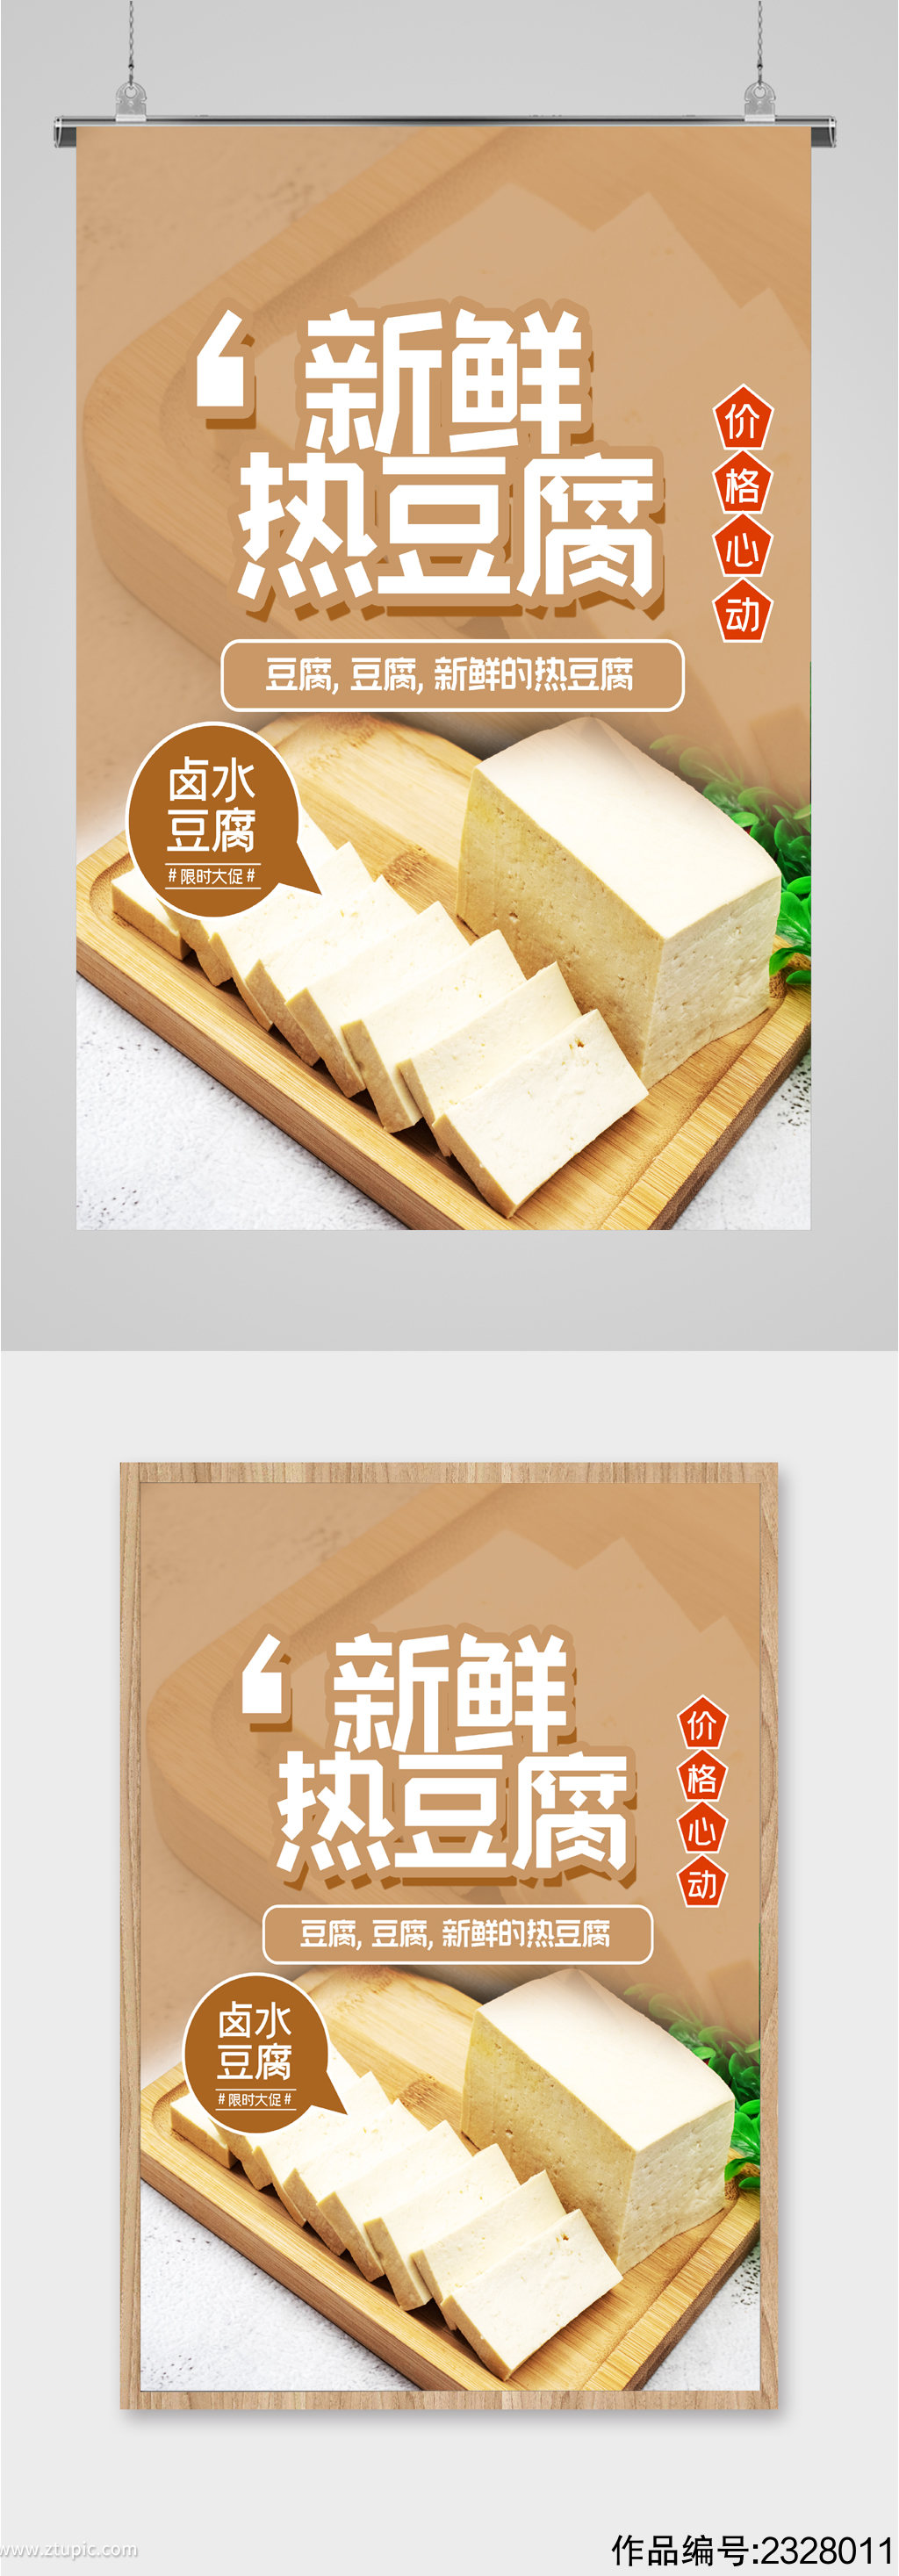 新鲜卫生热豆腐海报